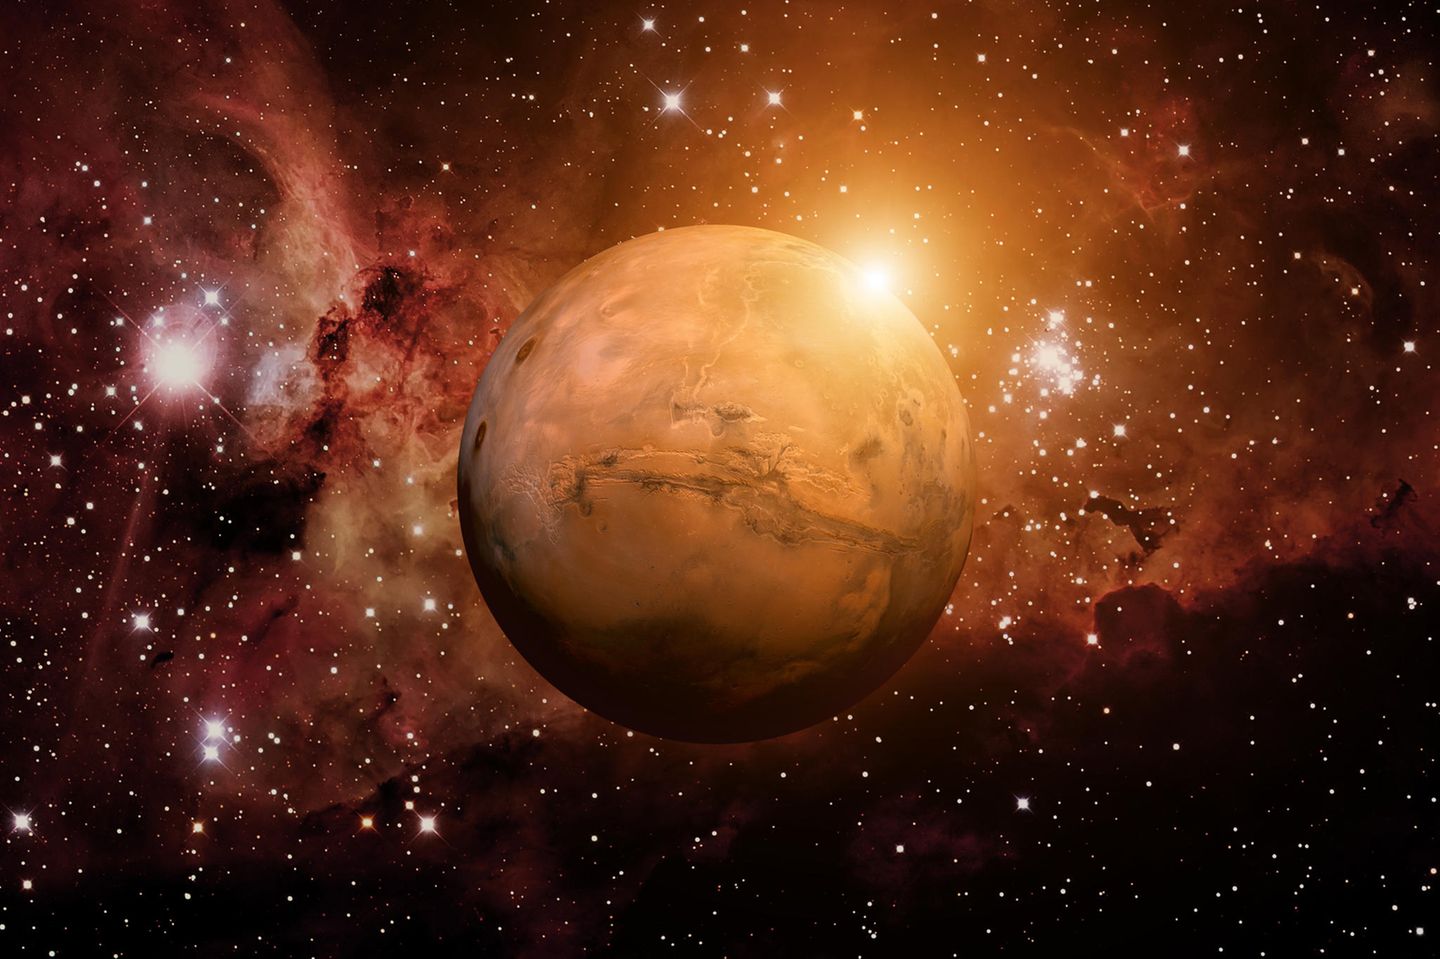 Horoskop: Planet Mars in unserer Galaxie